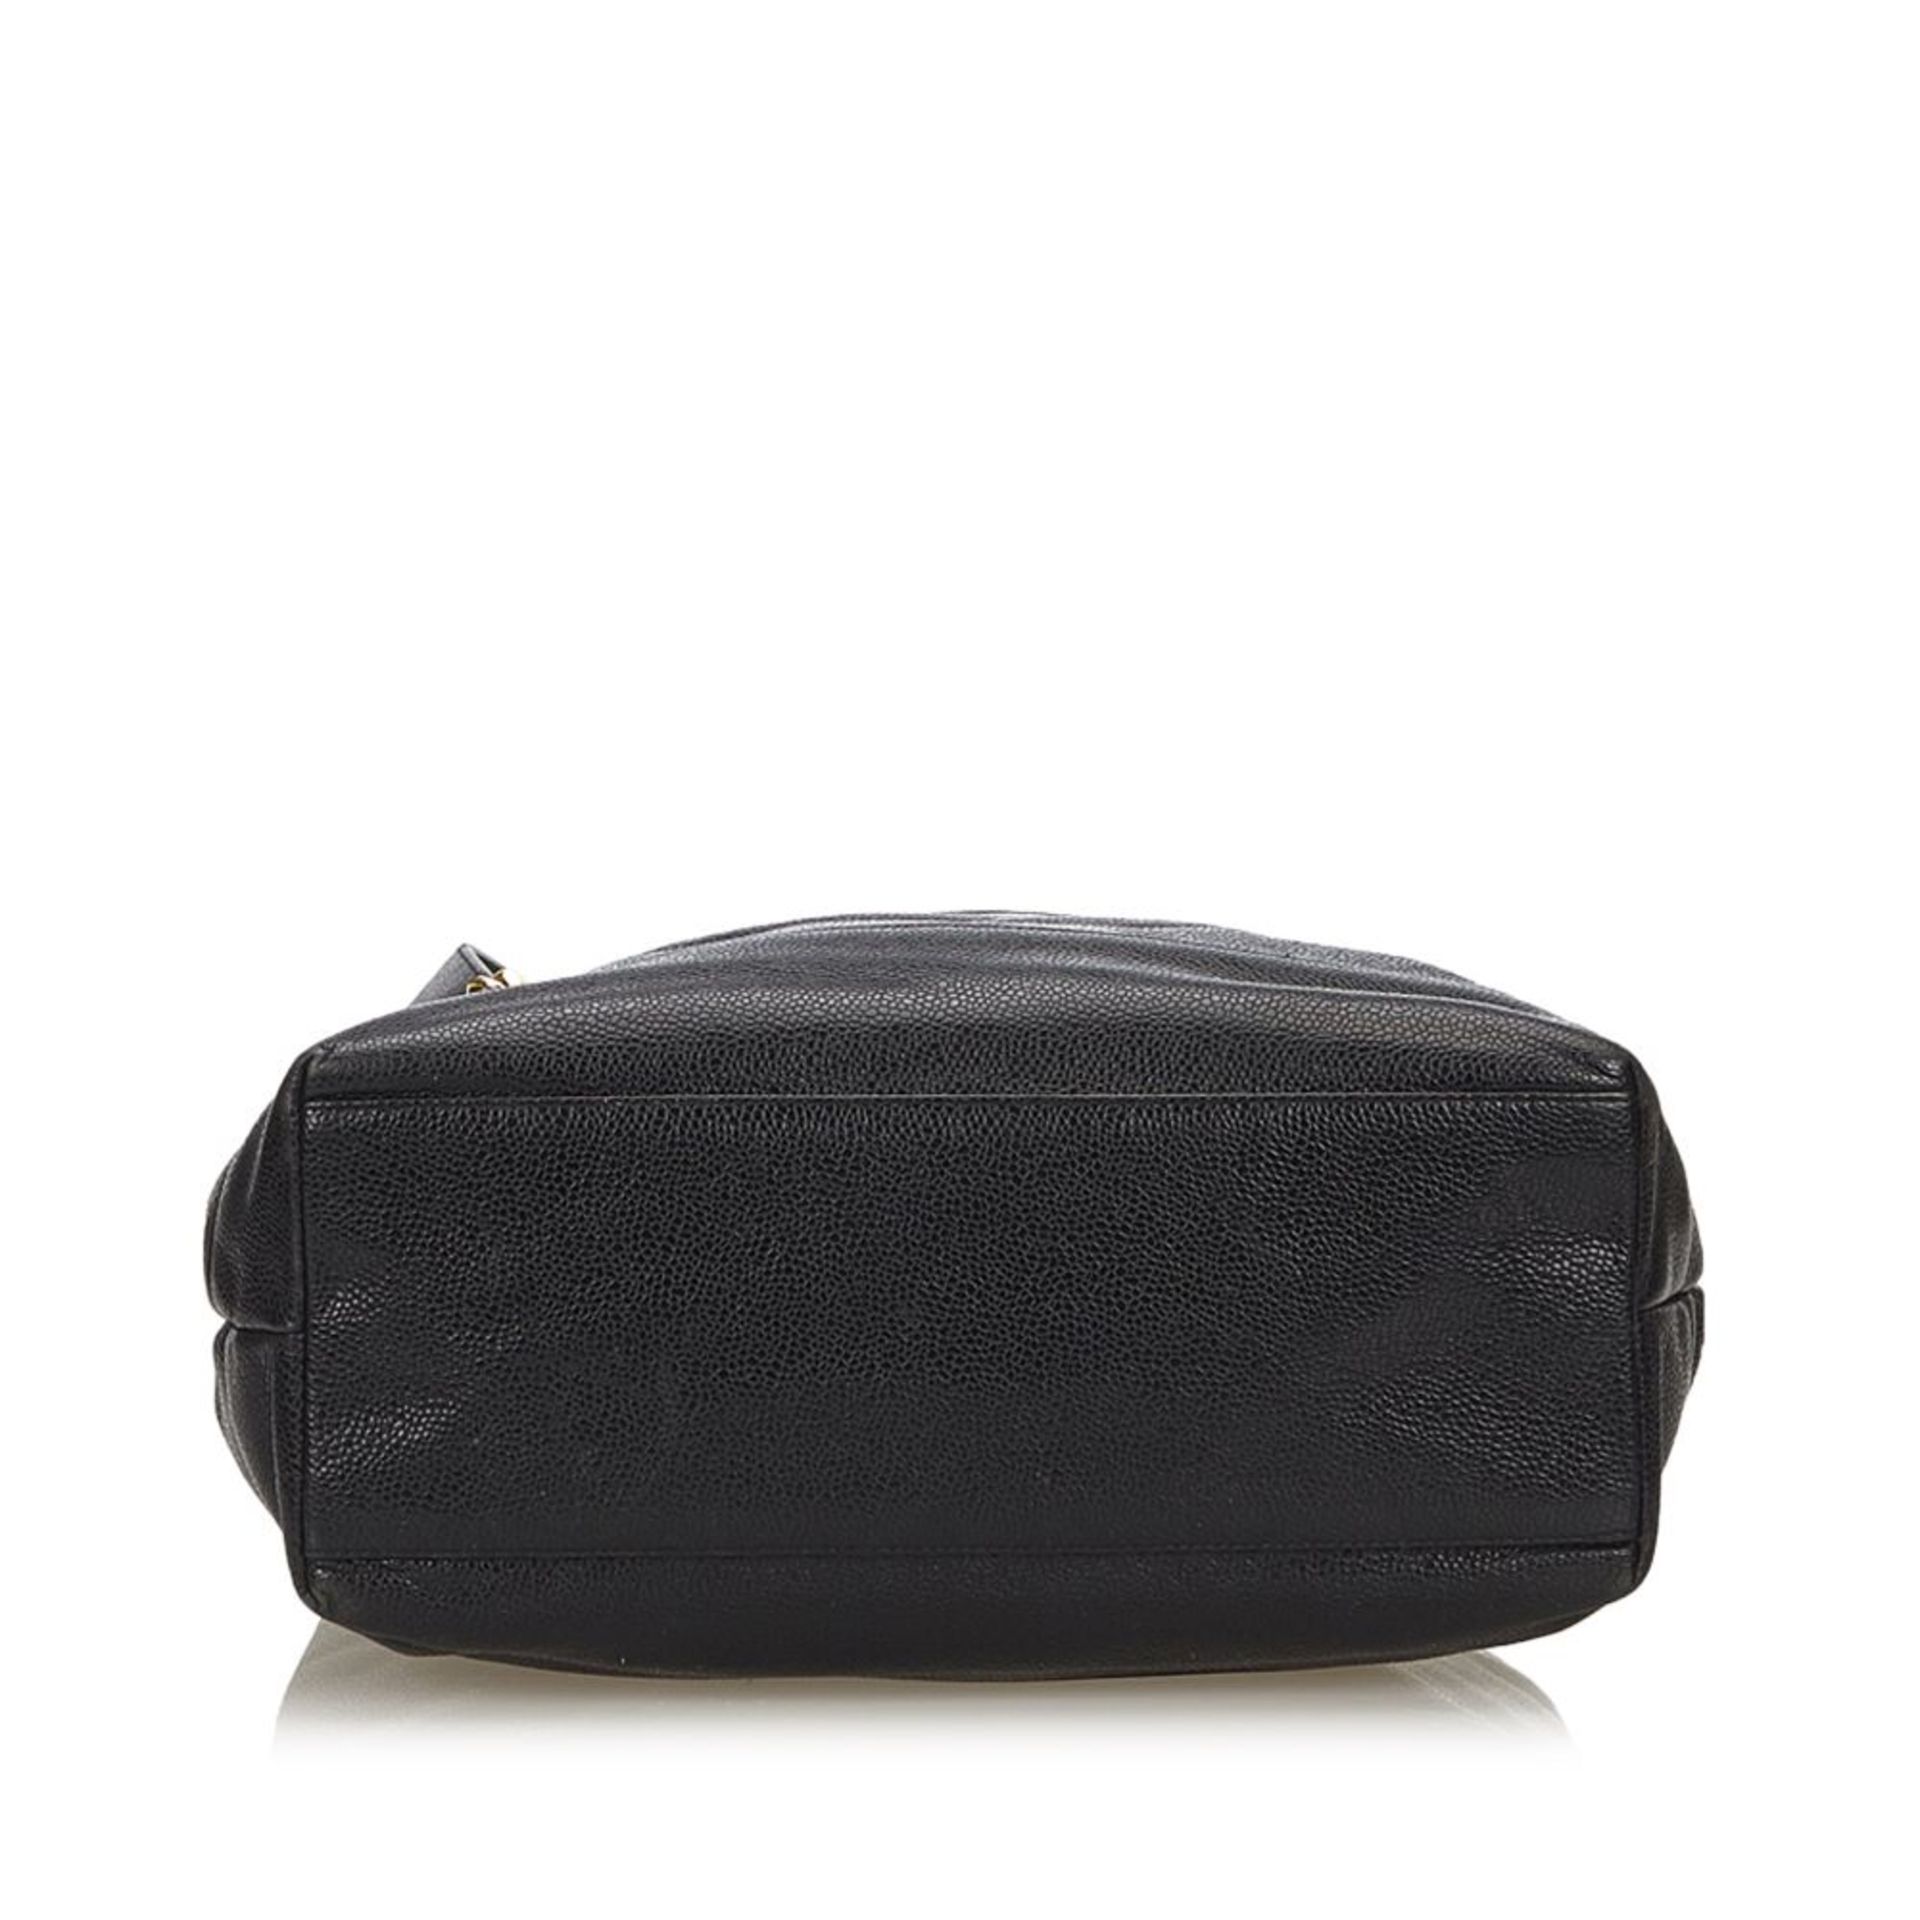 A Chanel 'CC' caviar leather shoulder bag,featuring a caviar leather body, flat leather straps - Bild 4 aus 6